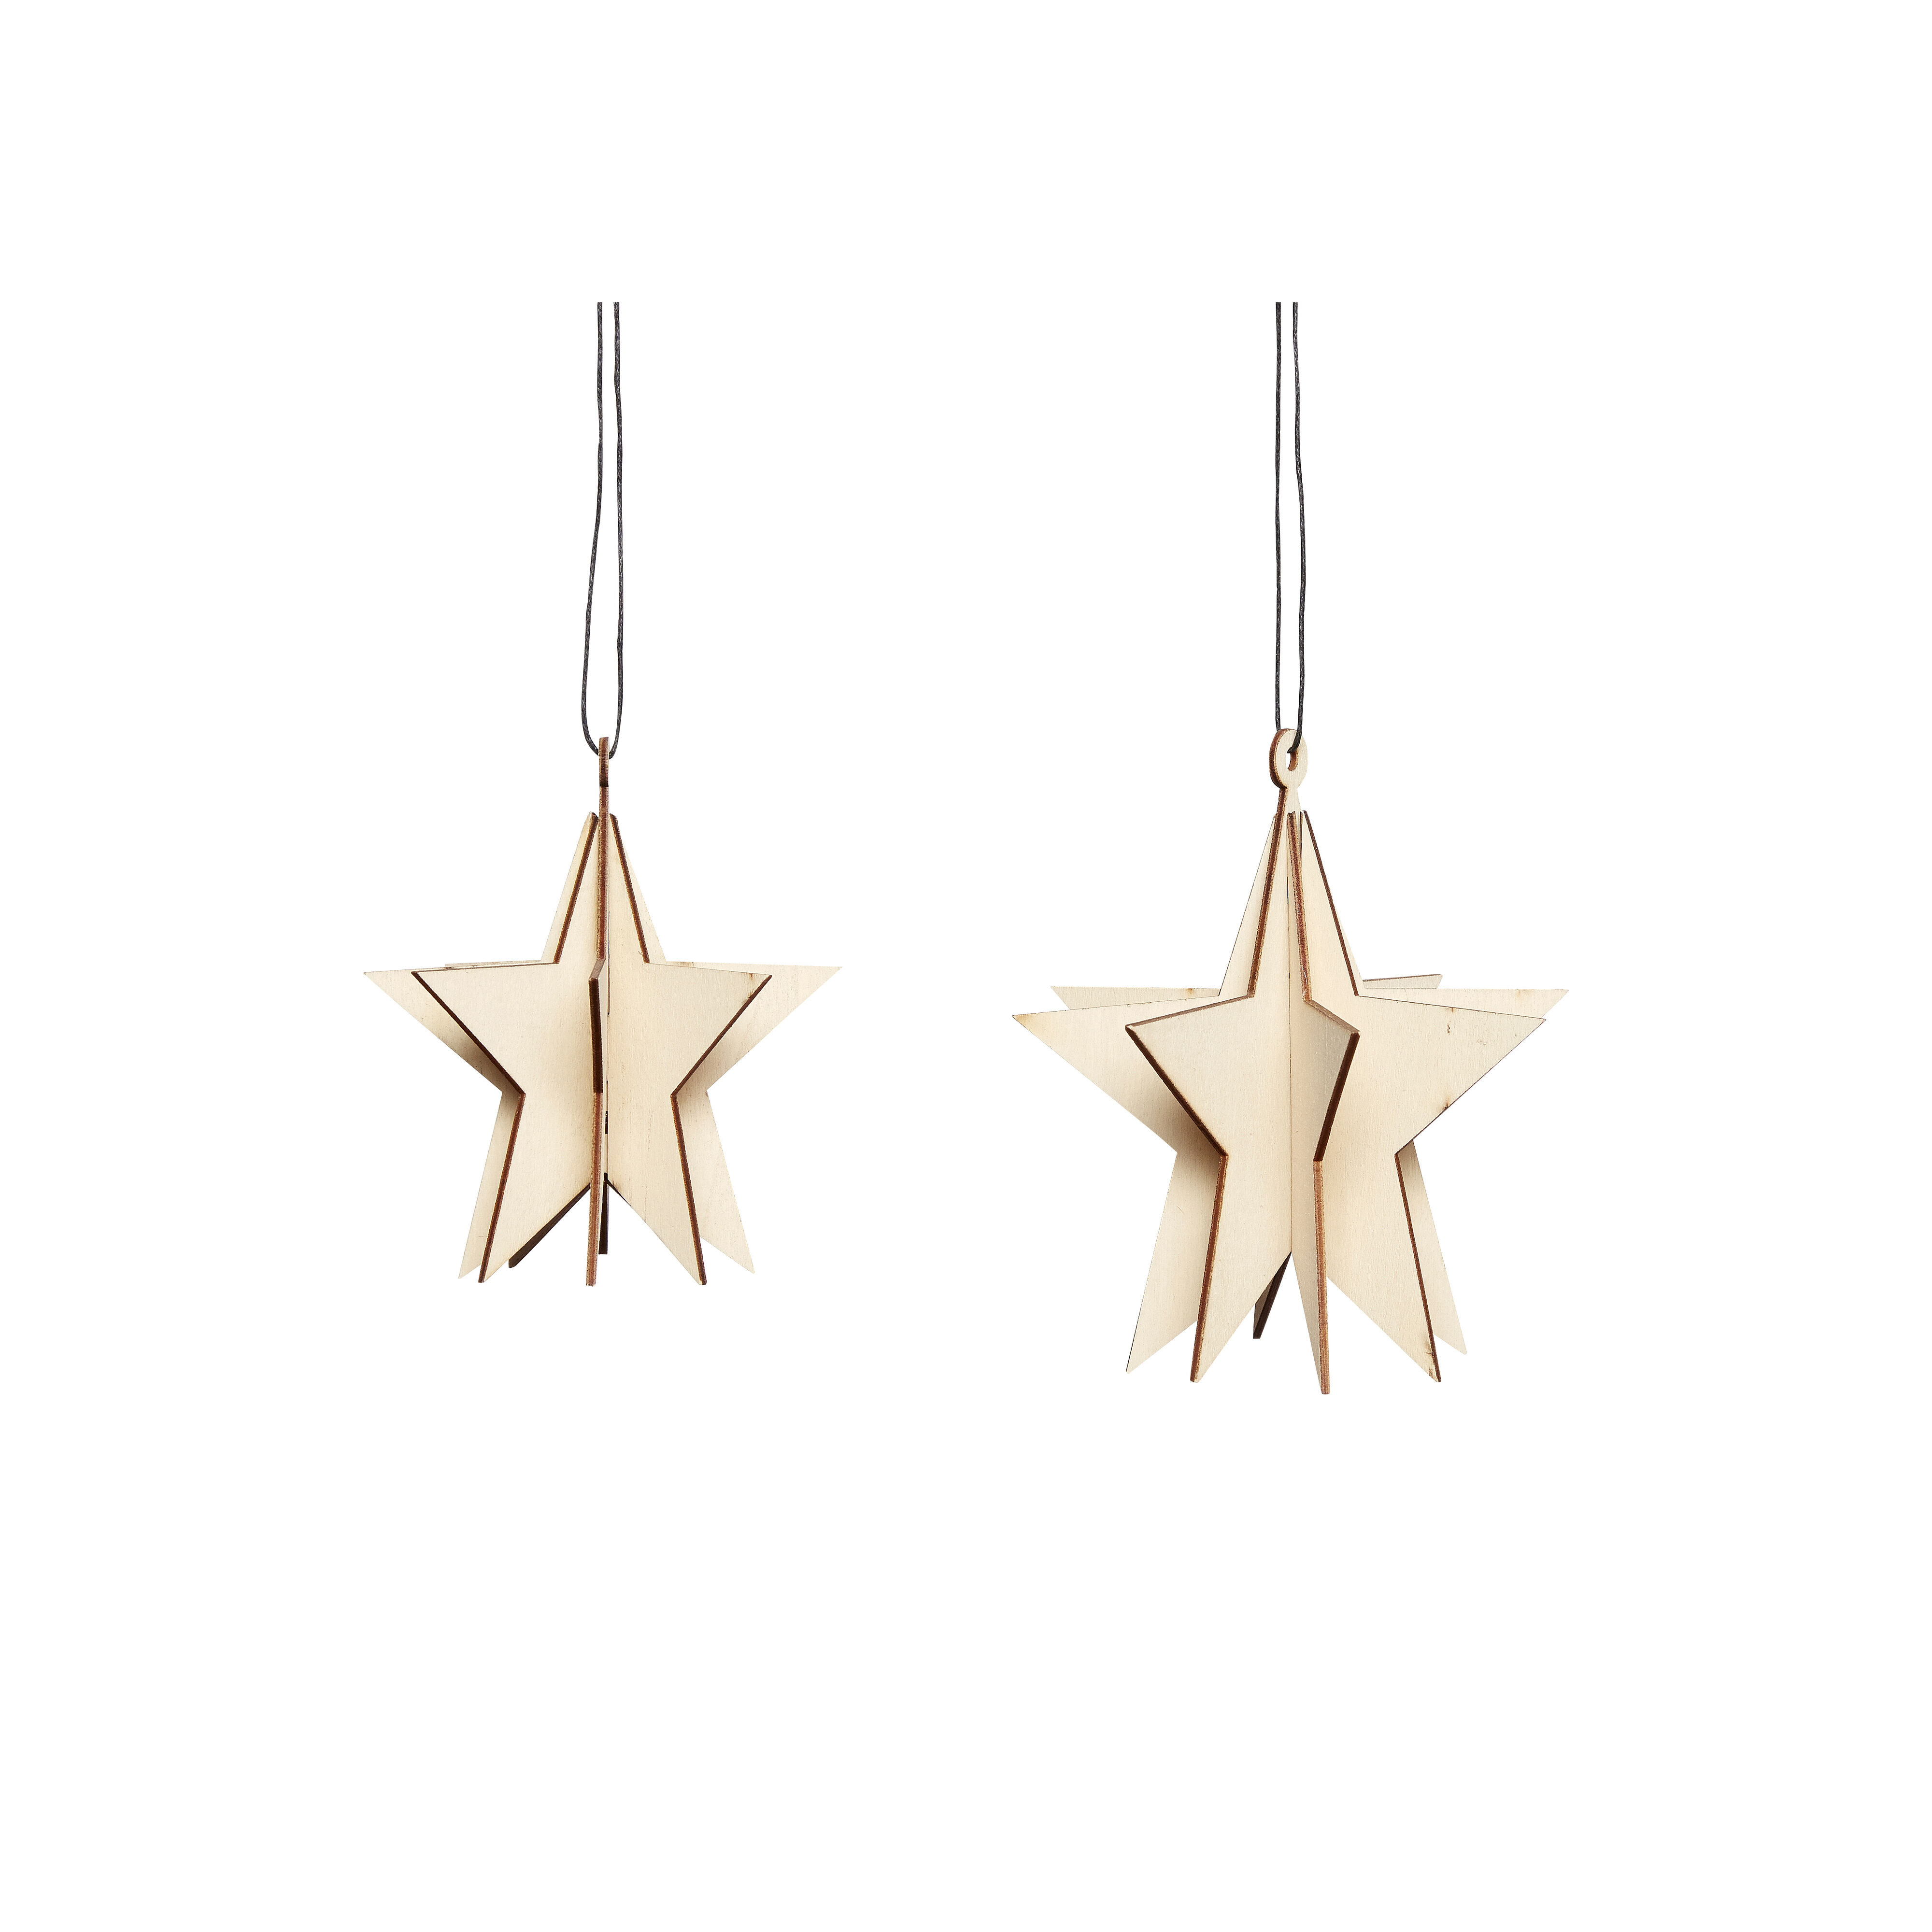 Hubsch Wooden 3D Star Ornament Set of 2